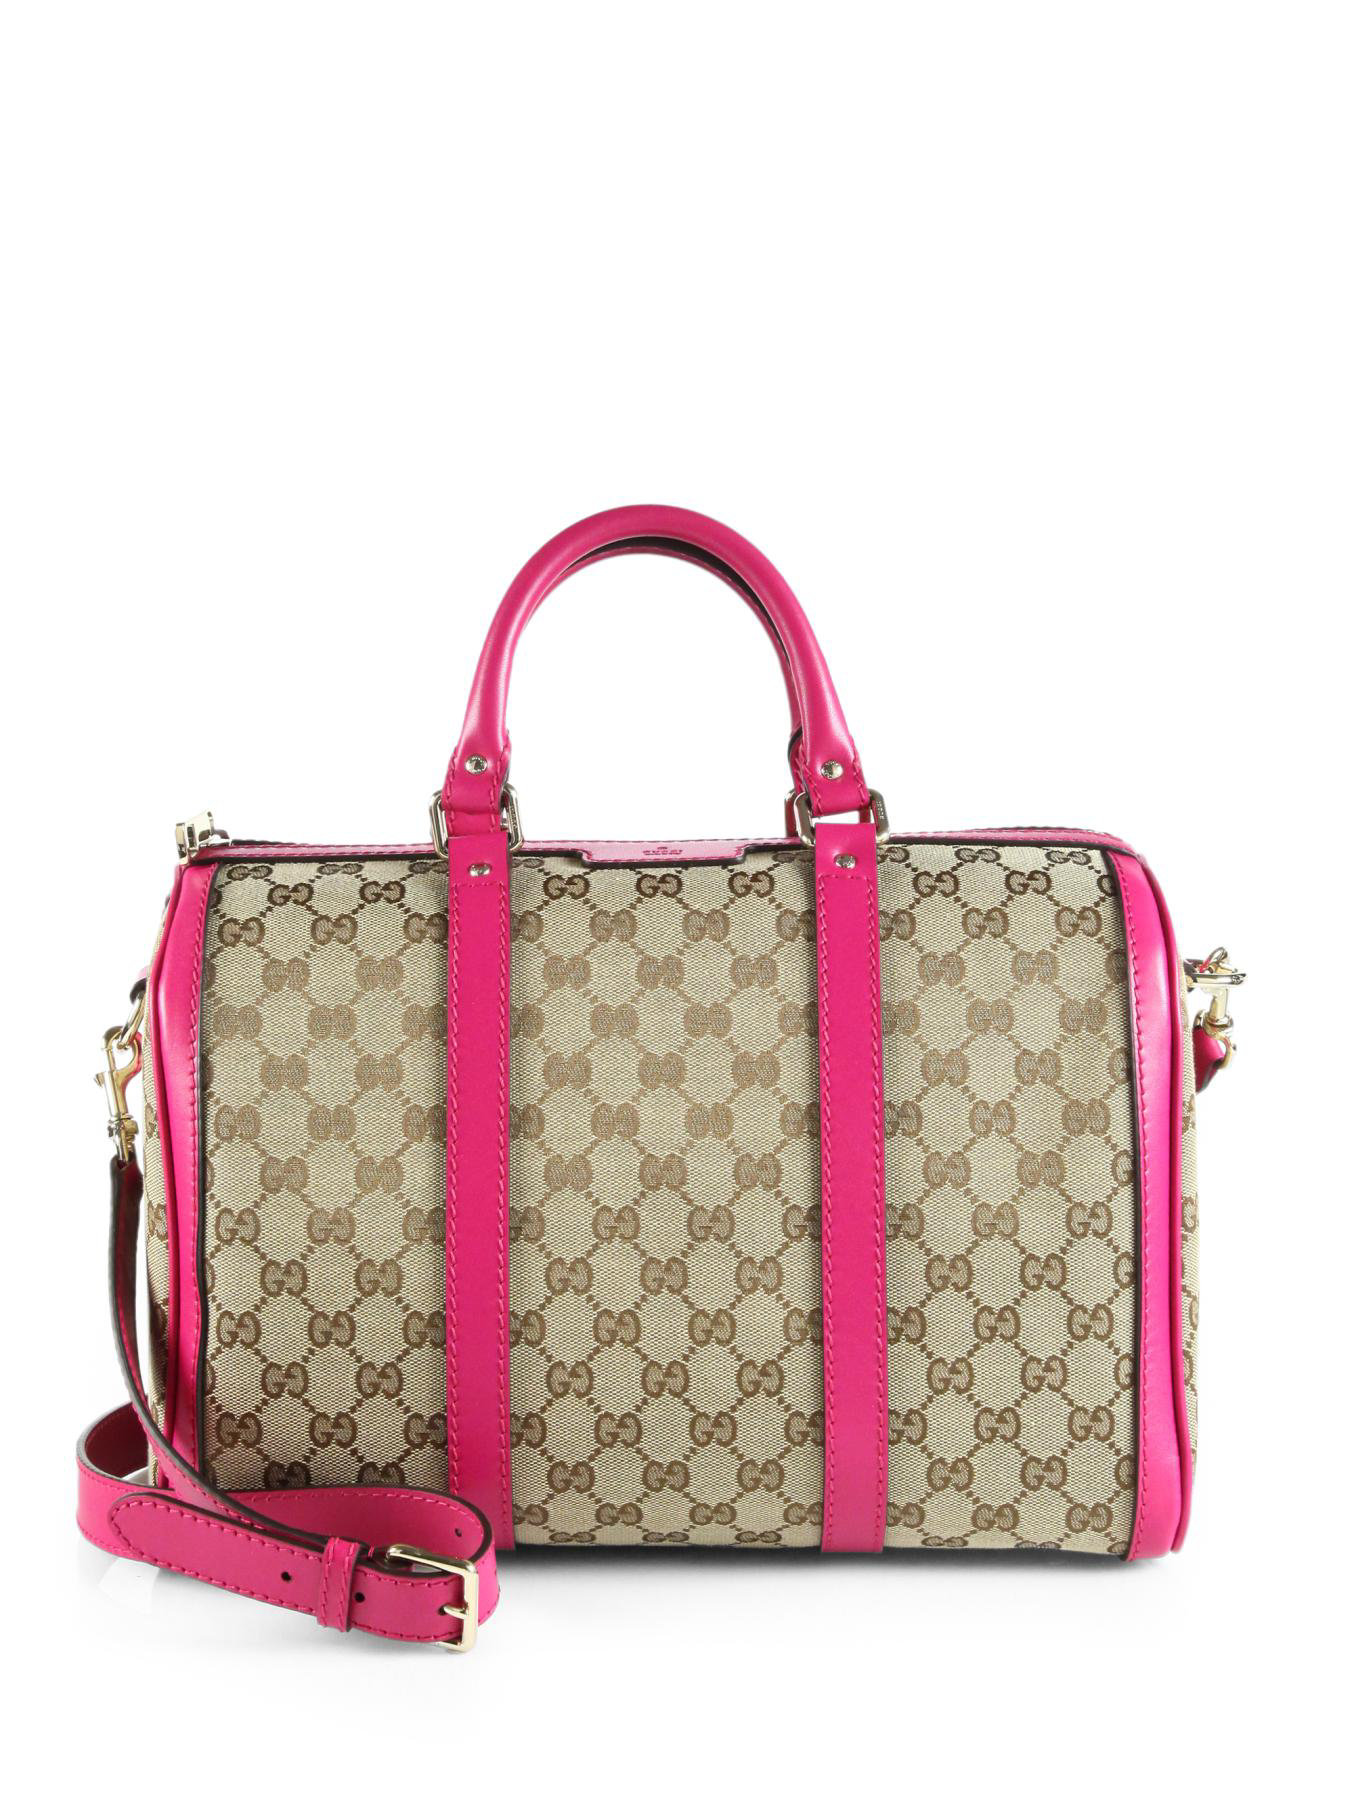 Vintage 90s Gucci Pink Canvas Handbag